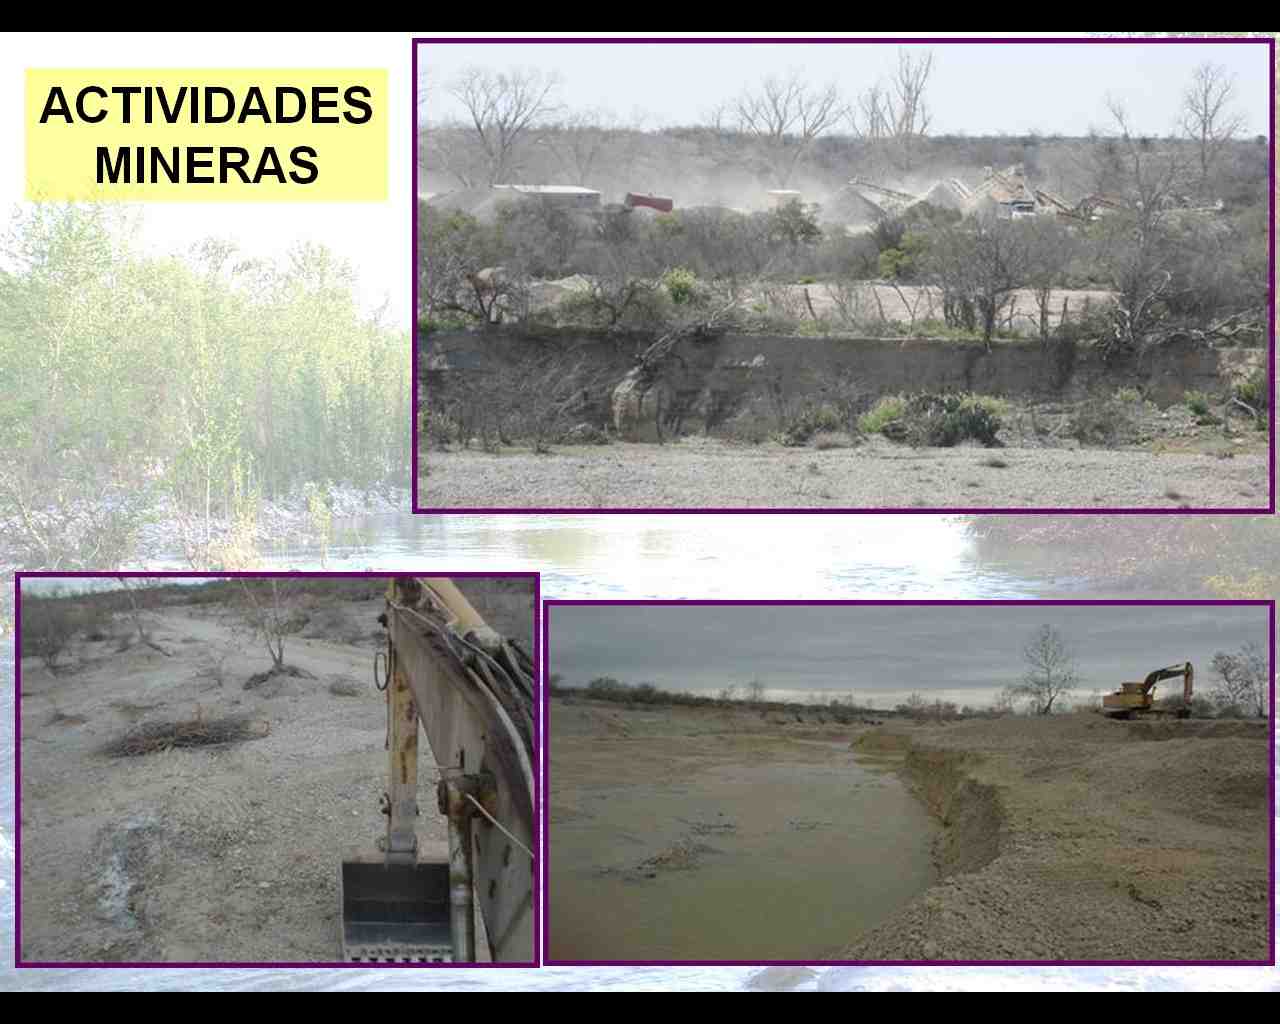 actividades mineras afectan rio